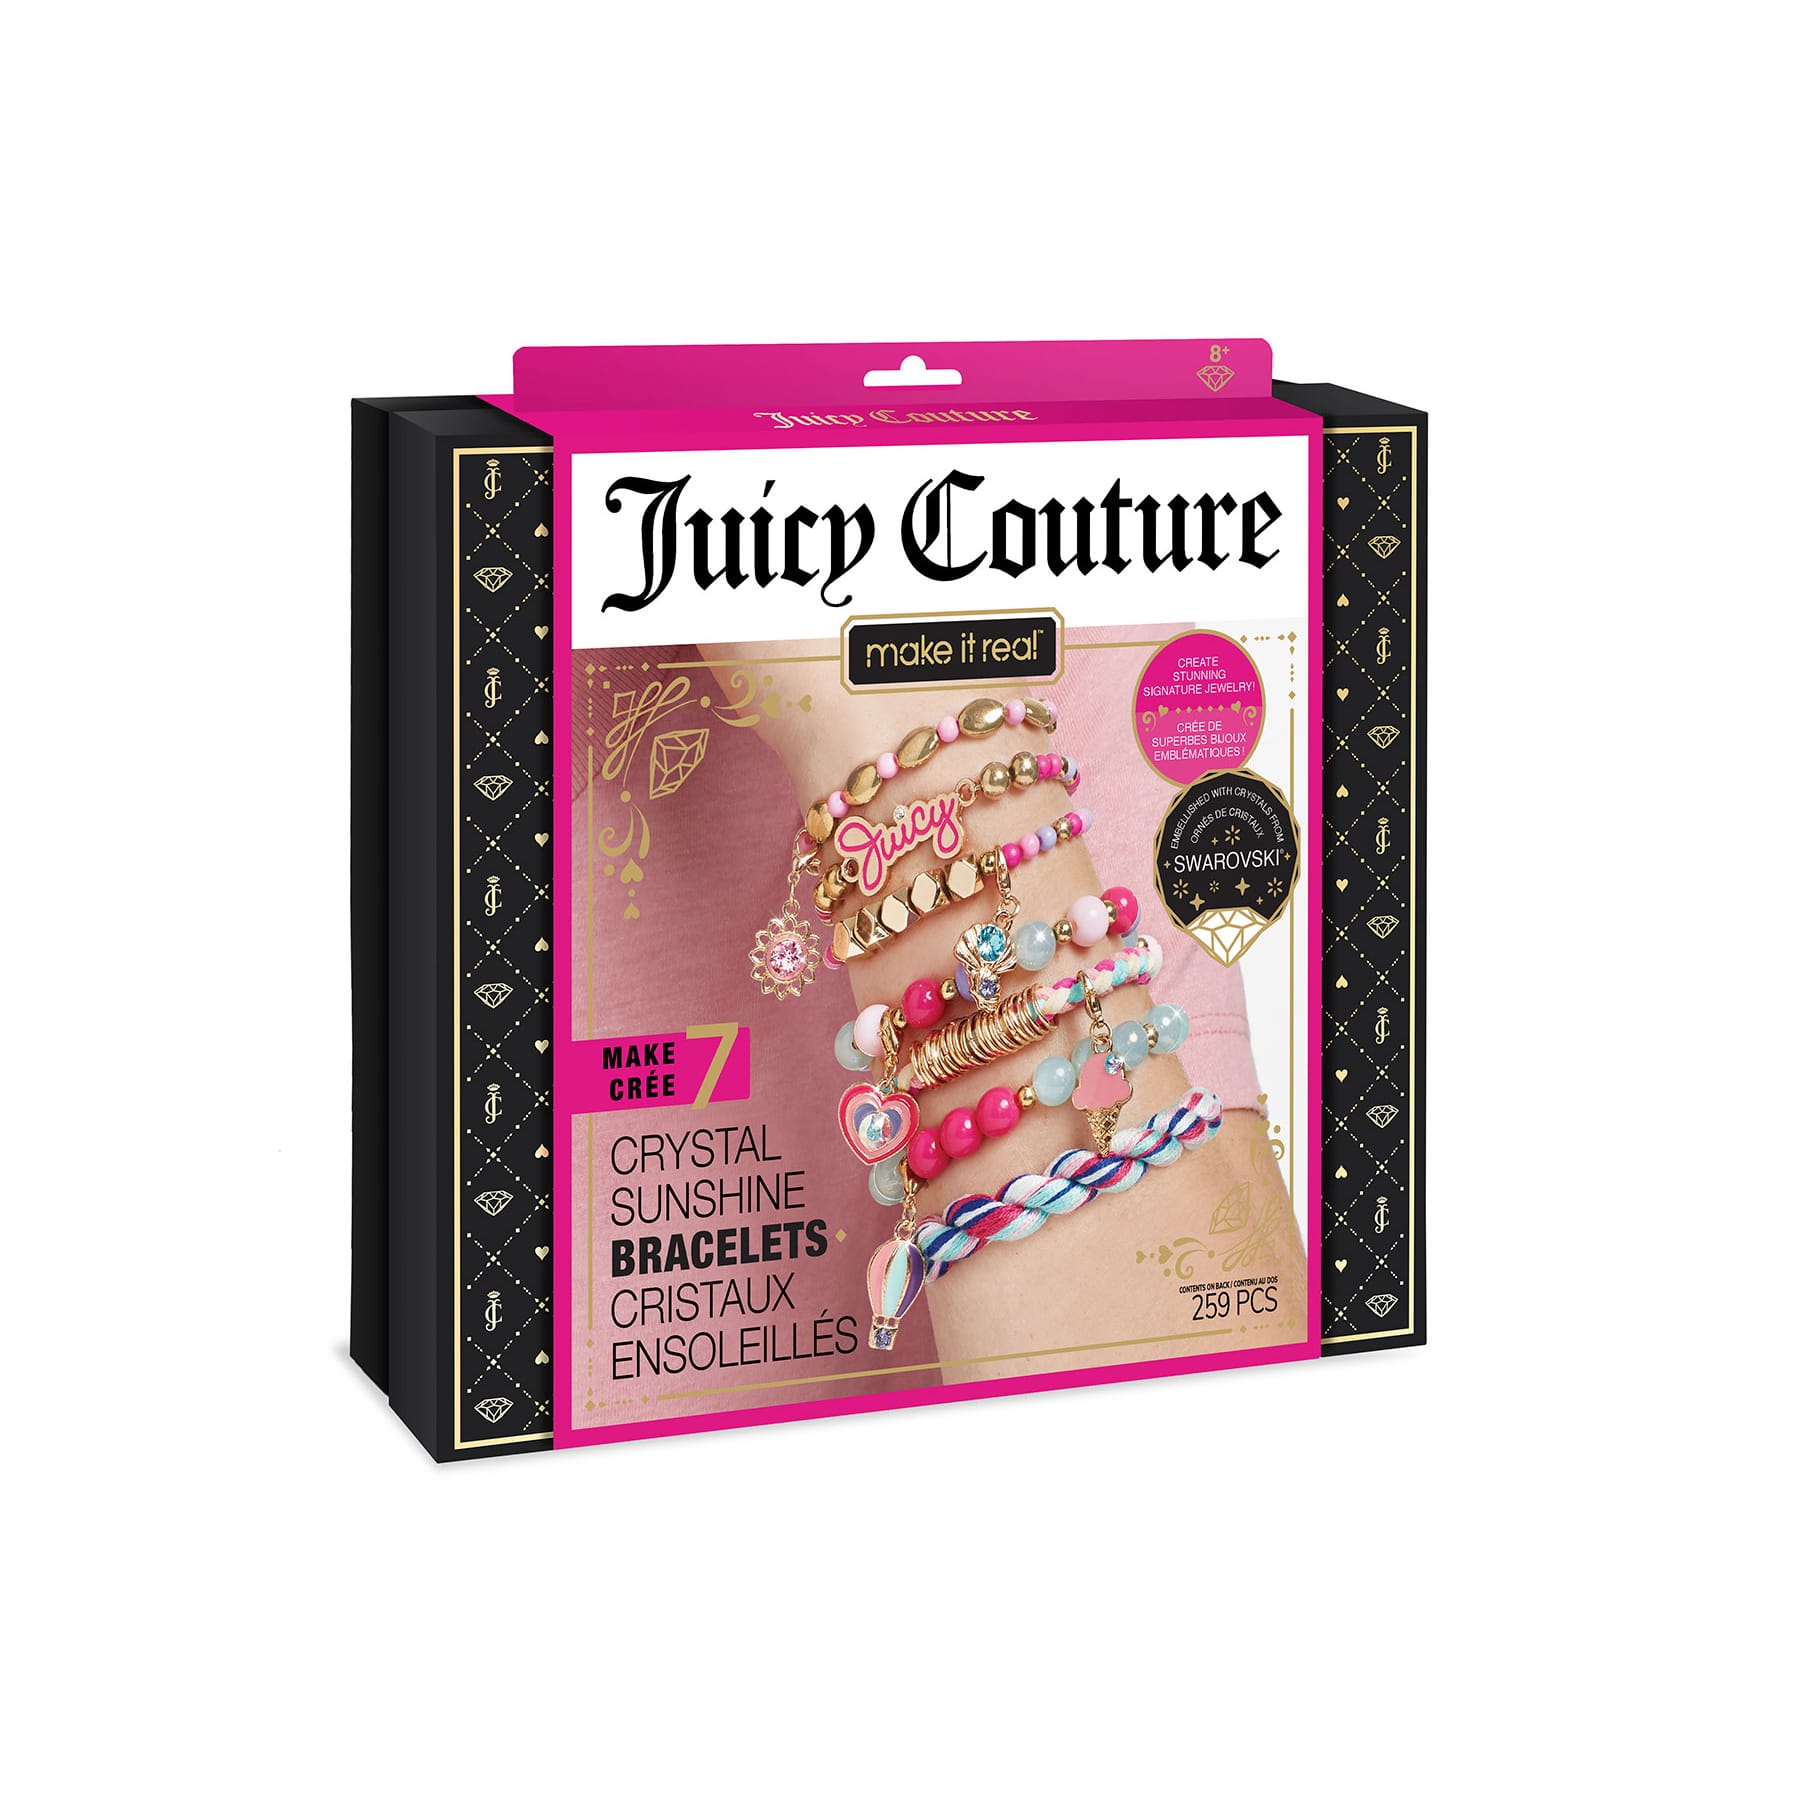 Juicy Couture Bracelets